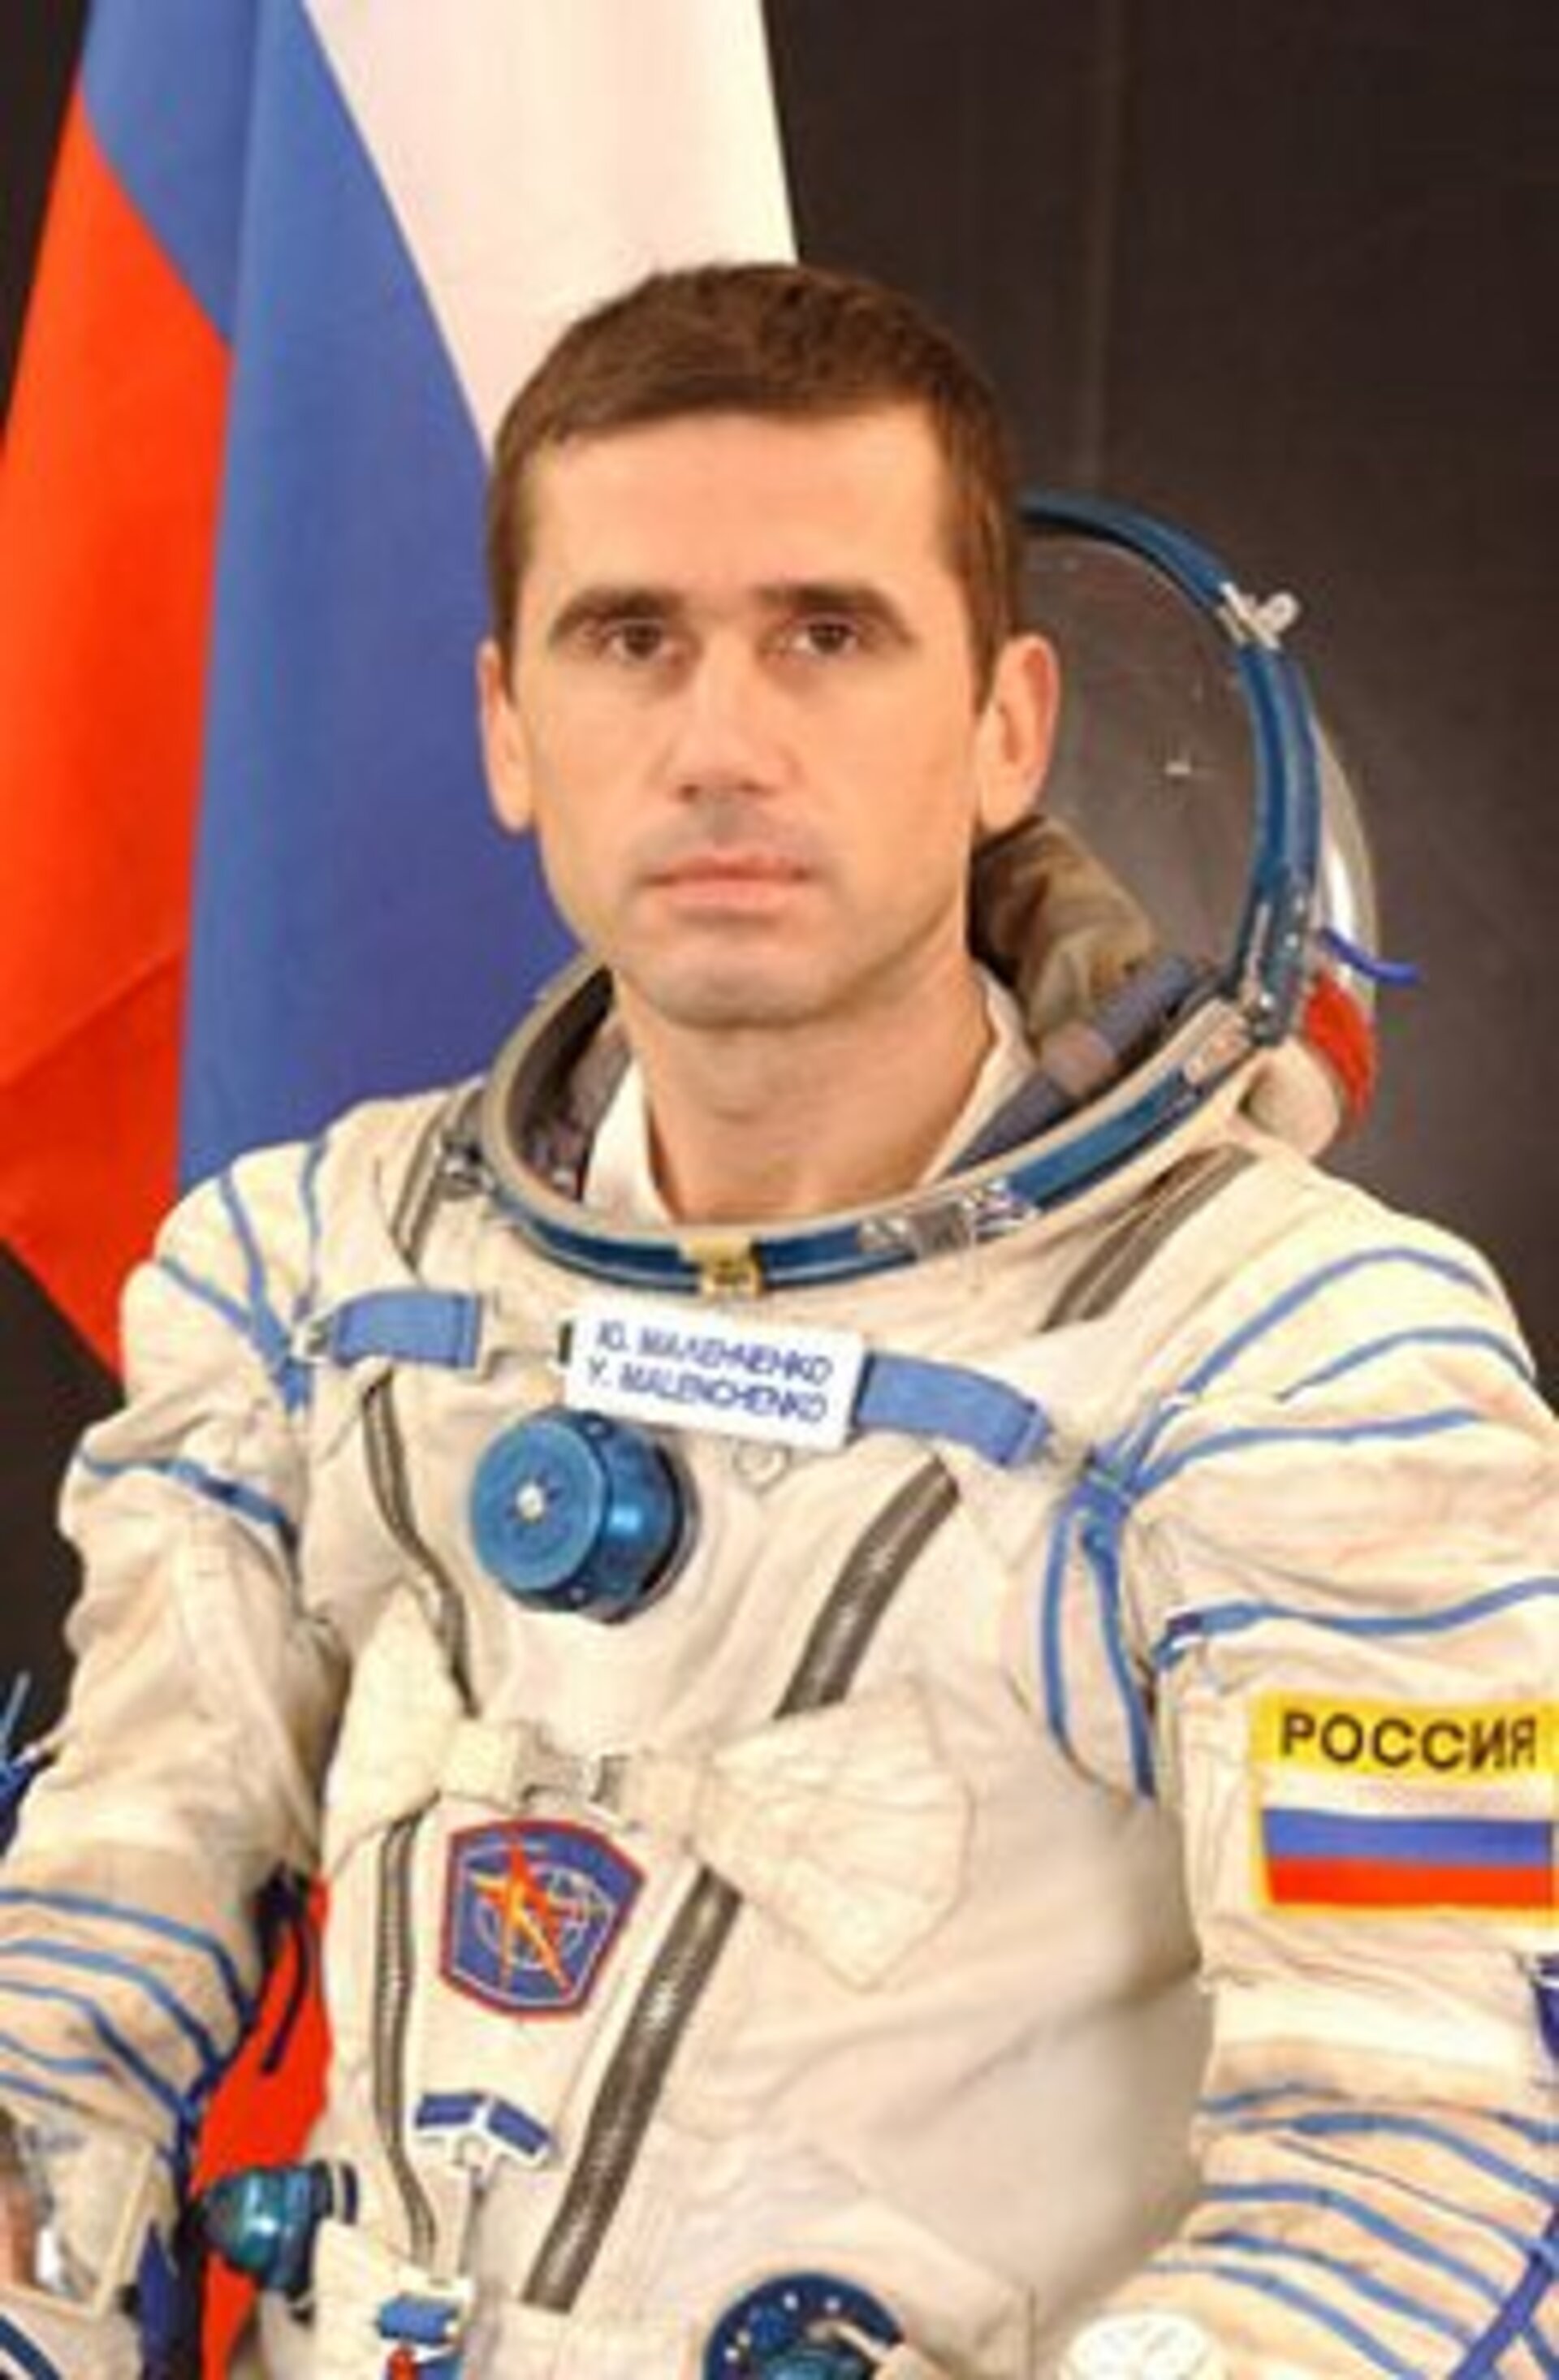 Yuri Malenchenko